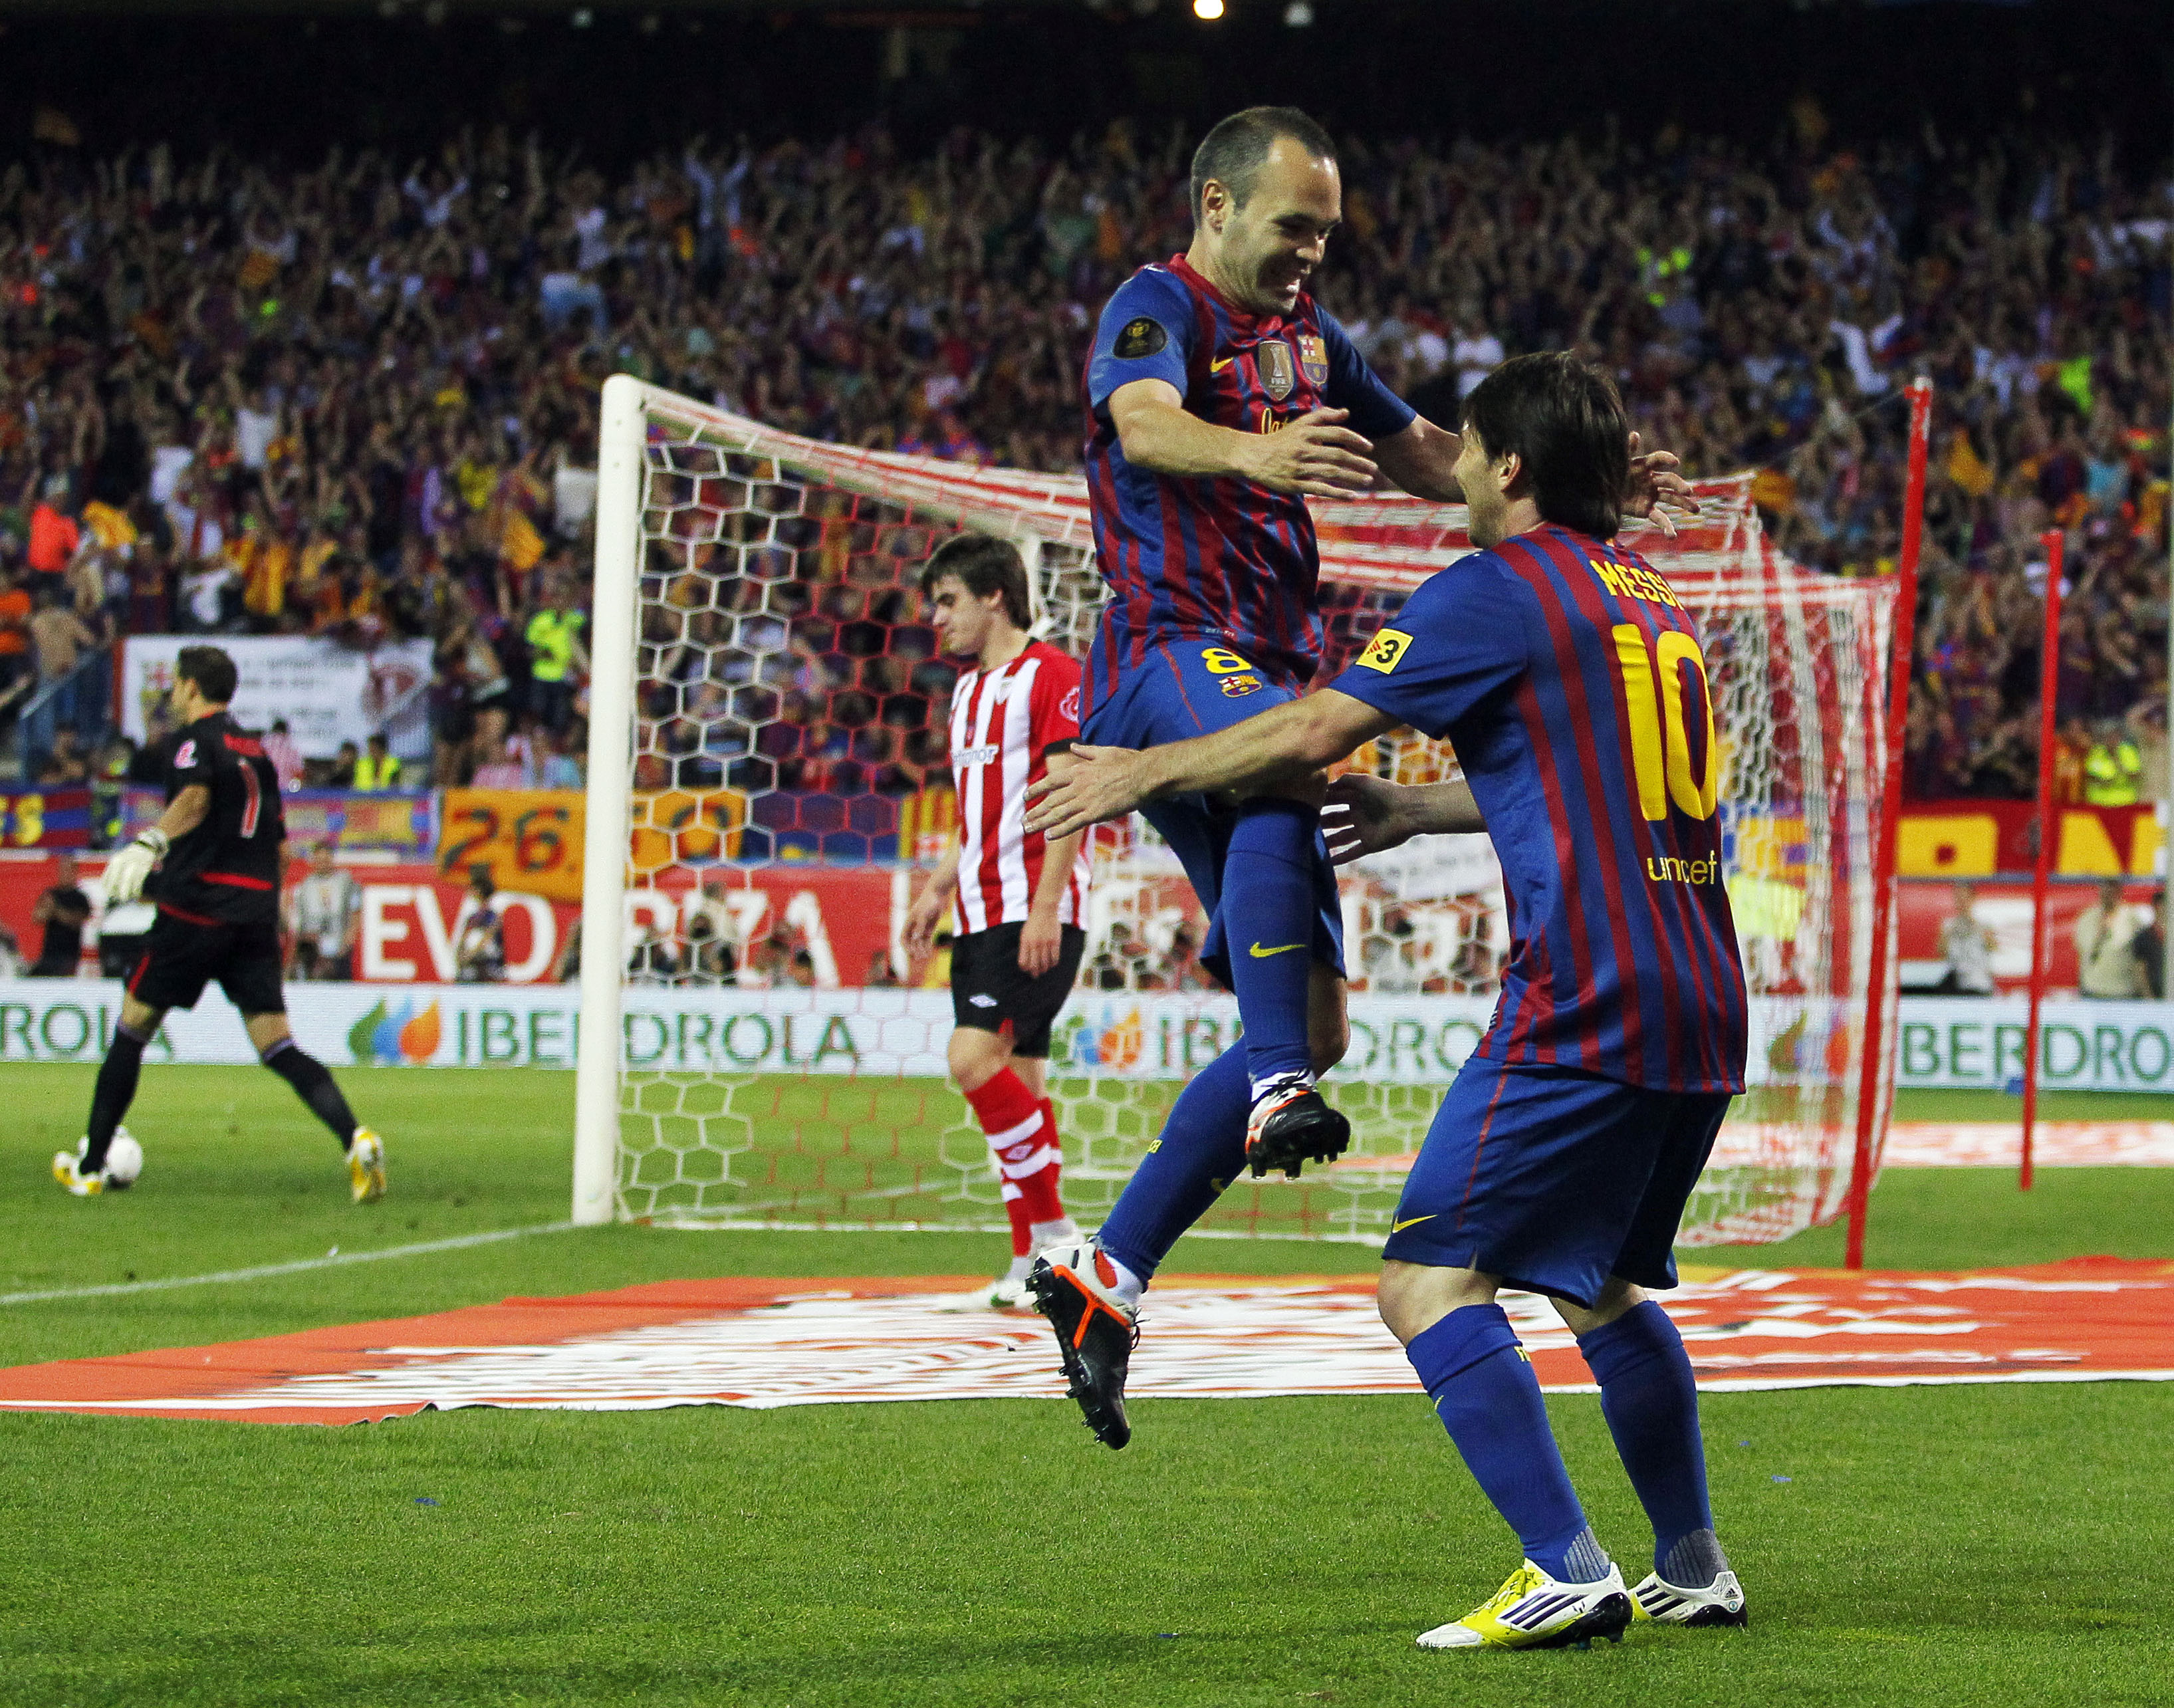 Målen gjordes av Messi och Pedro gånger två.